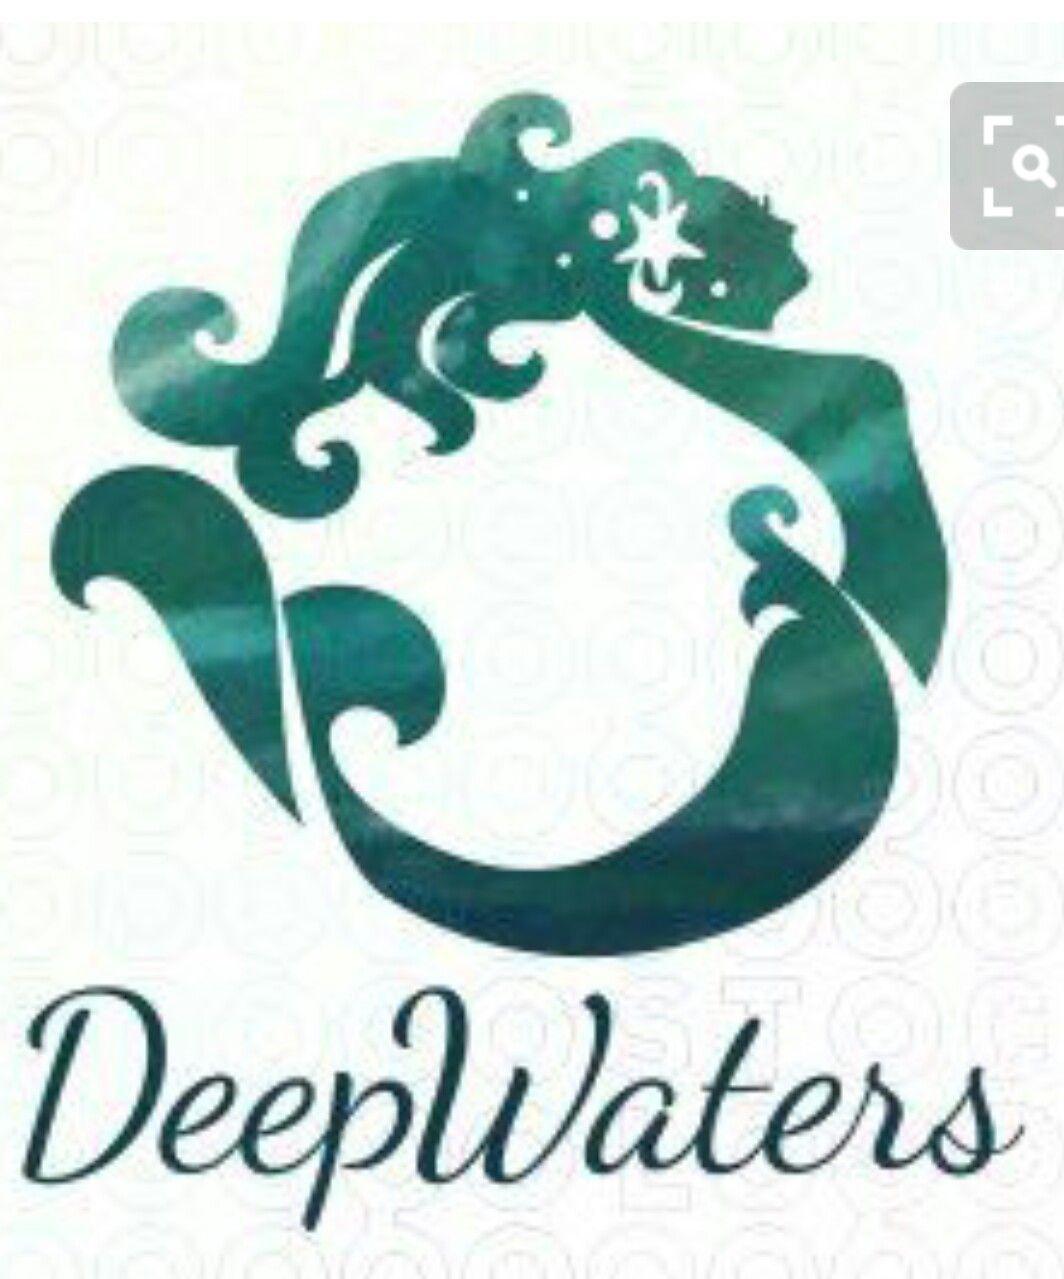 Mermen Logo - Awesome logo. Spas. Mermaid, Mermaid art, Mermaids, mermen